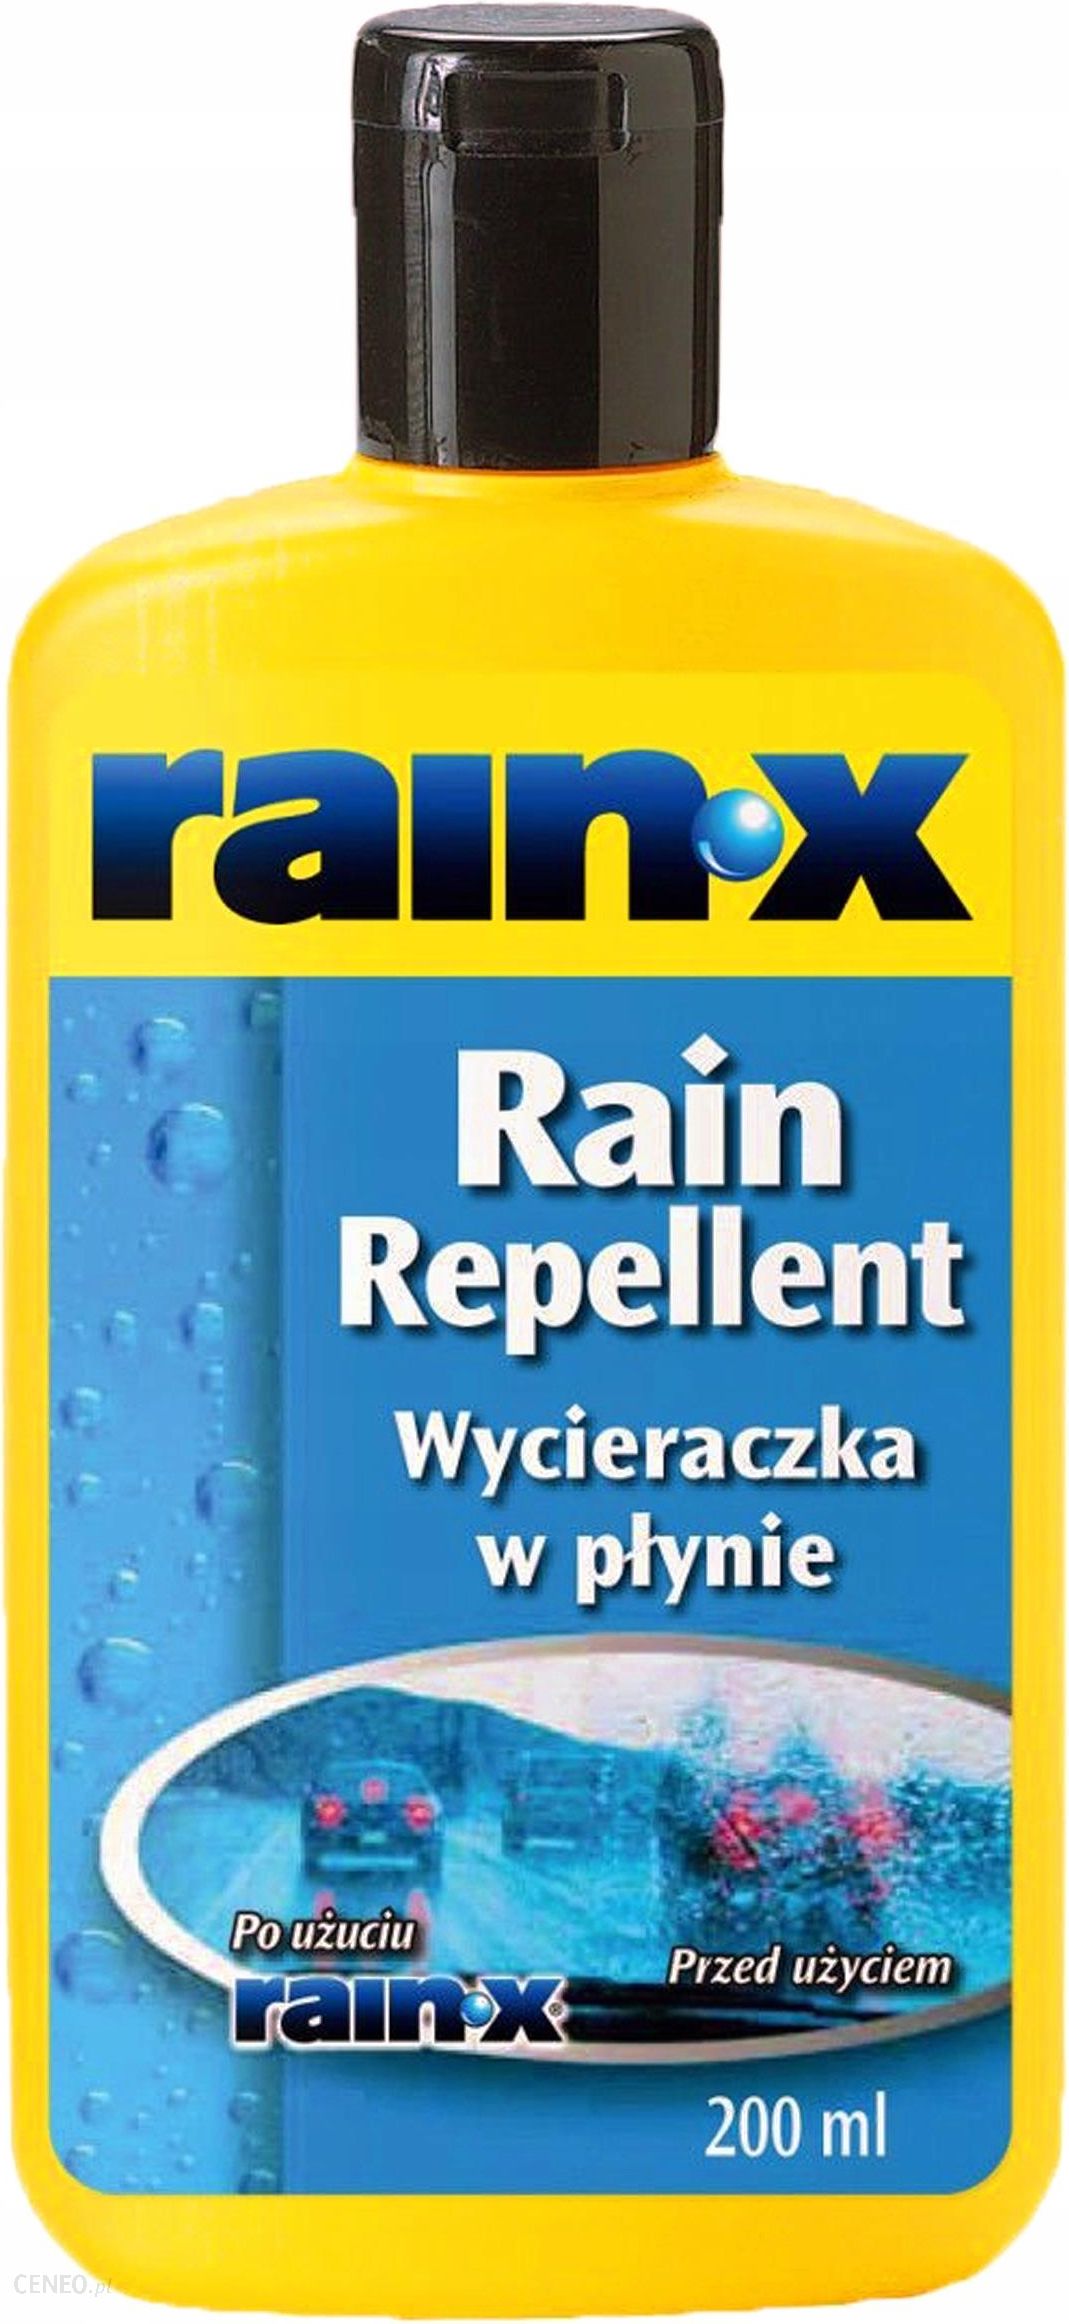 Zestaw: Niewidzialna wycieraczka RAIN-X Rain Repellent + Antypara RAIN-X  Anti-Fog 200/200ml - sklep